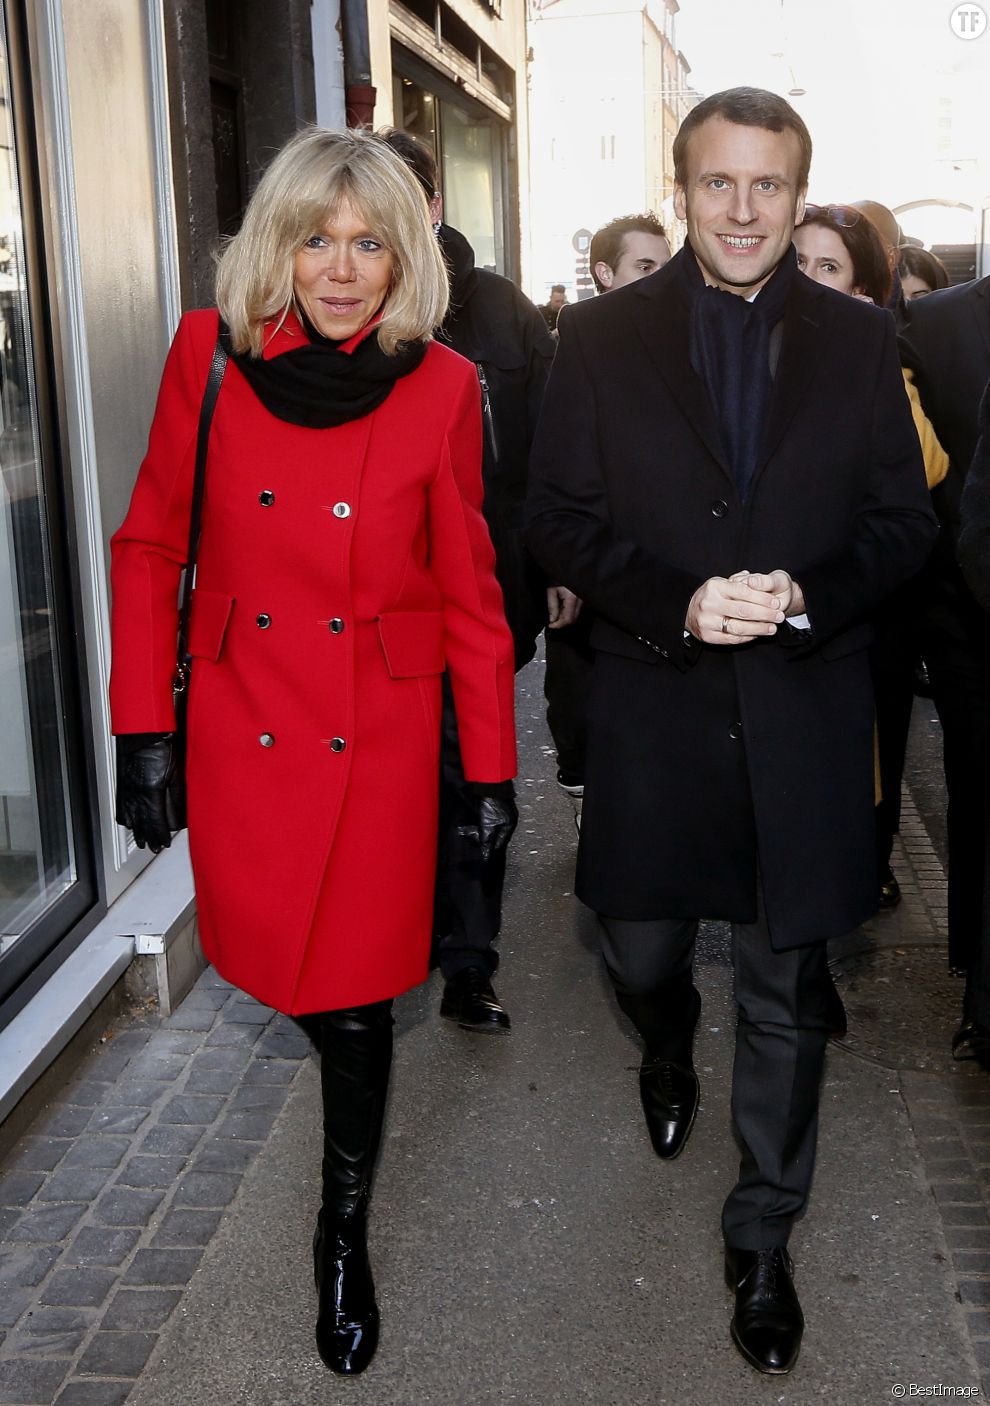  Emmanuel Macron et sa femme Brigitte Macron (Trogneux) visitent le marché Saint-Pierre à Clermont-Ferrand, France, le 7 janvier 2017 